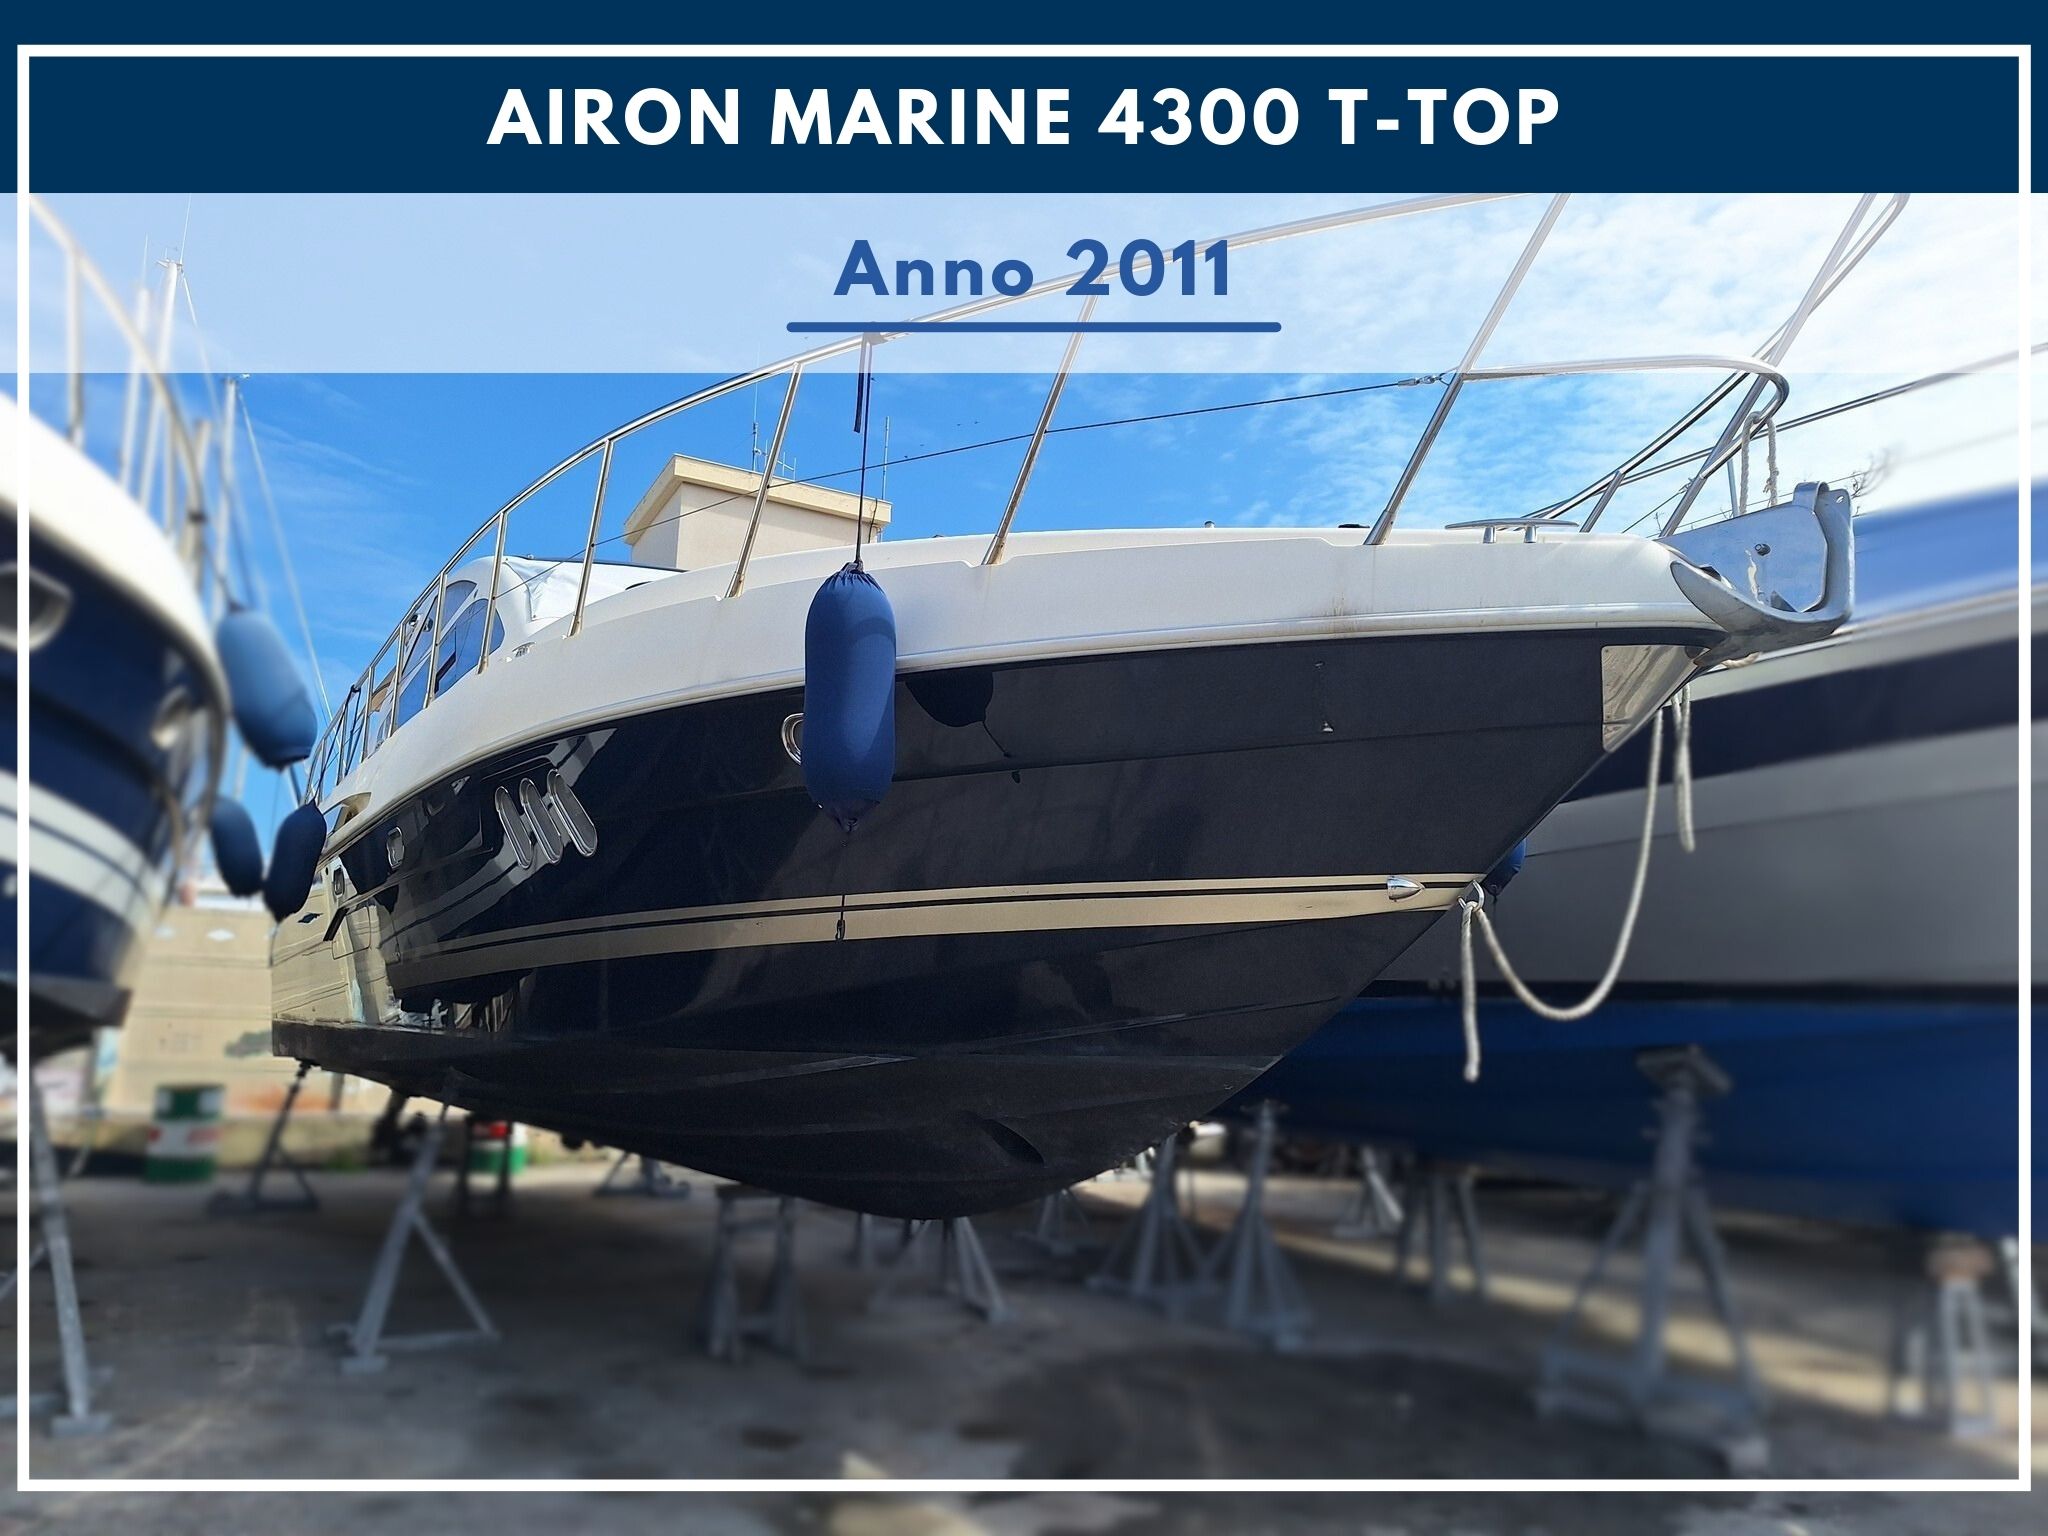 Nueva Ilegada: Airon Marine 4300 T-Top